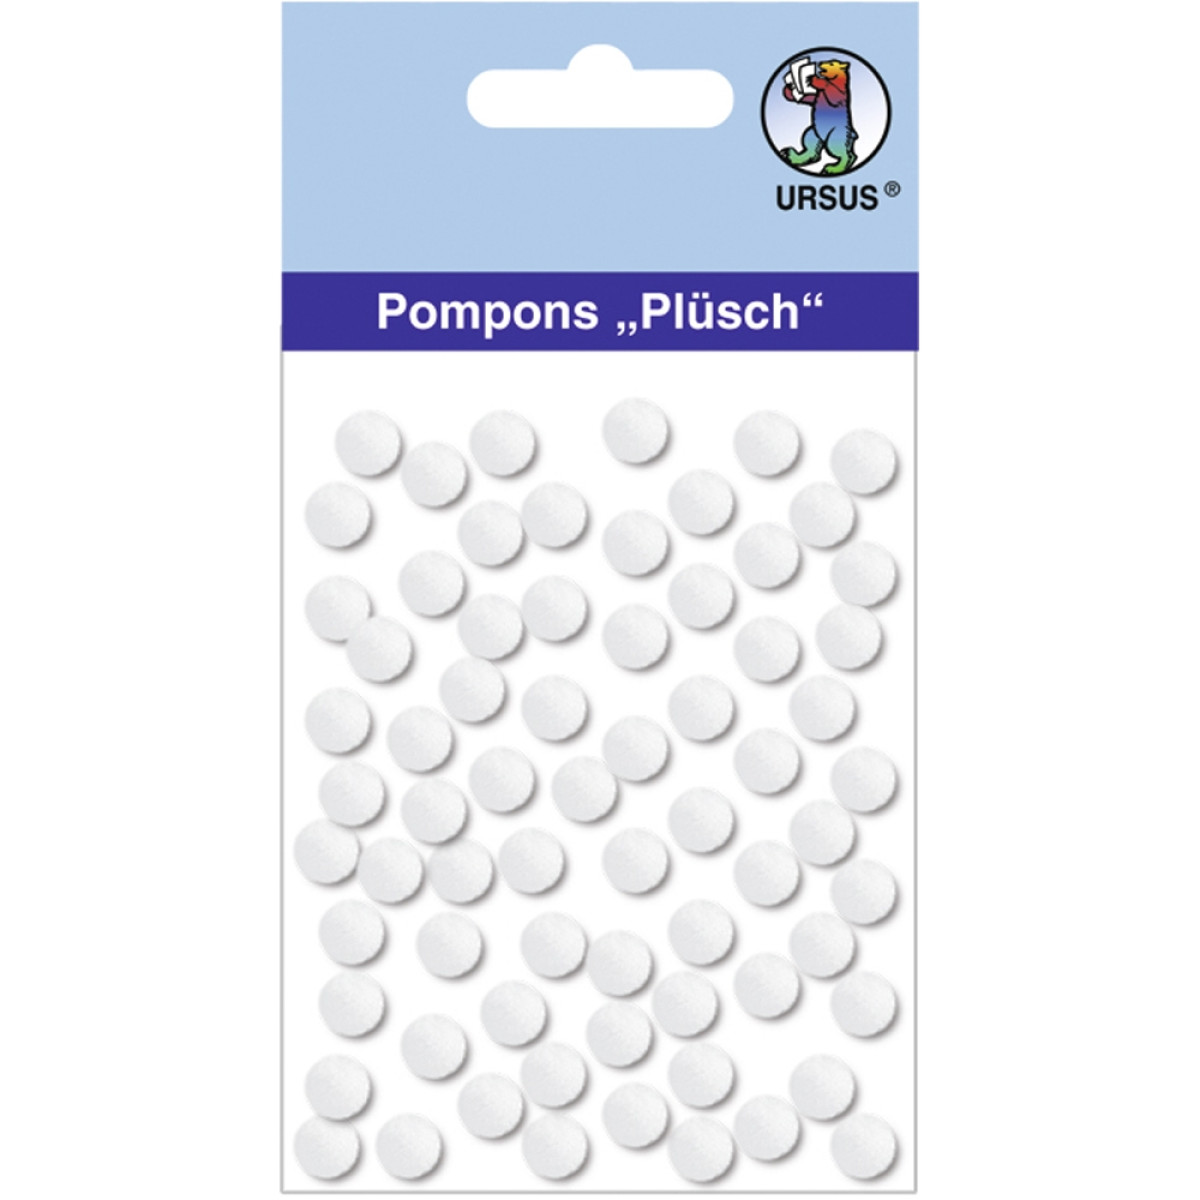 Pompons "Plüsch" 7 mm weiß